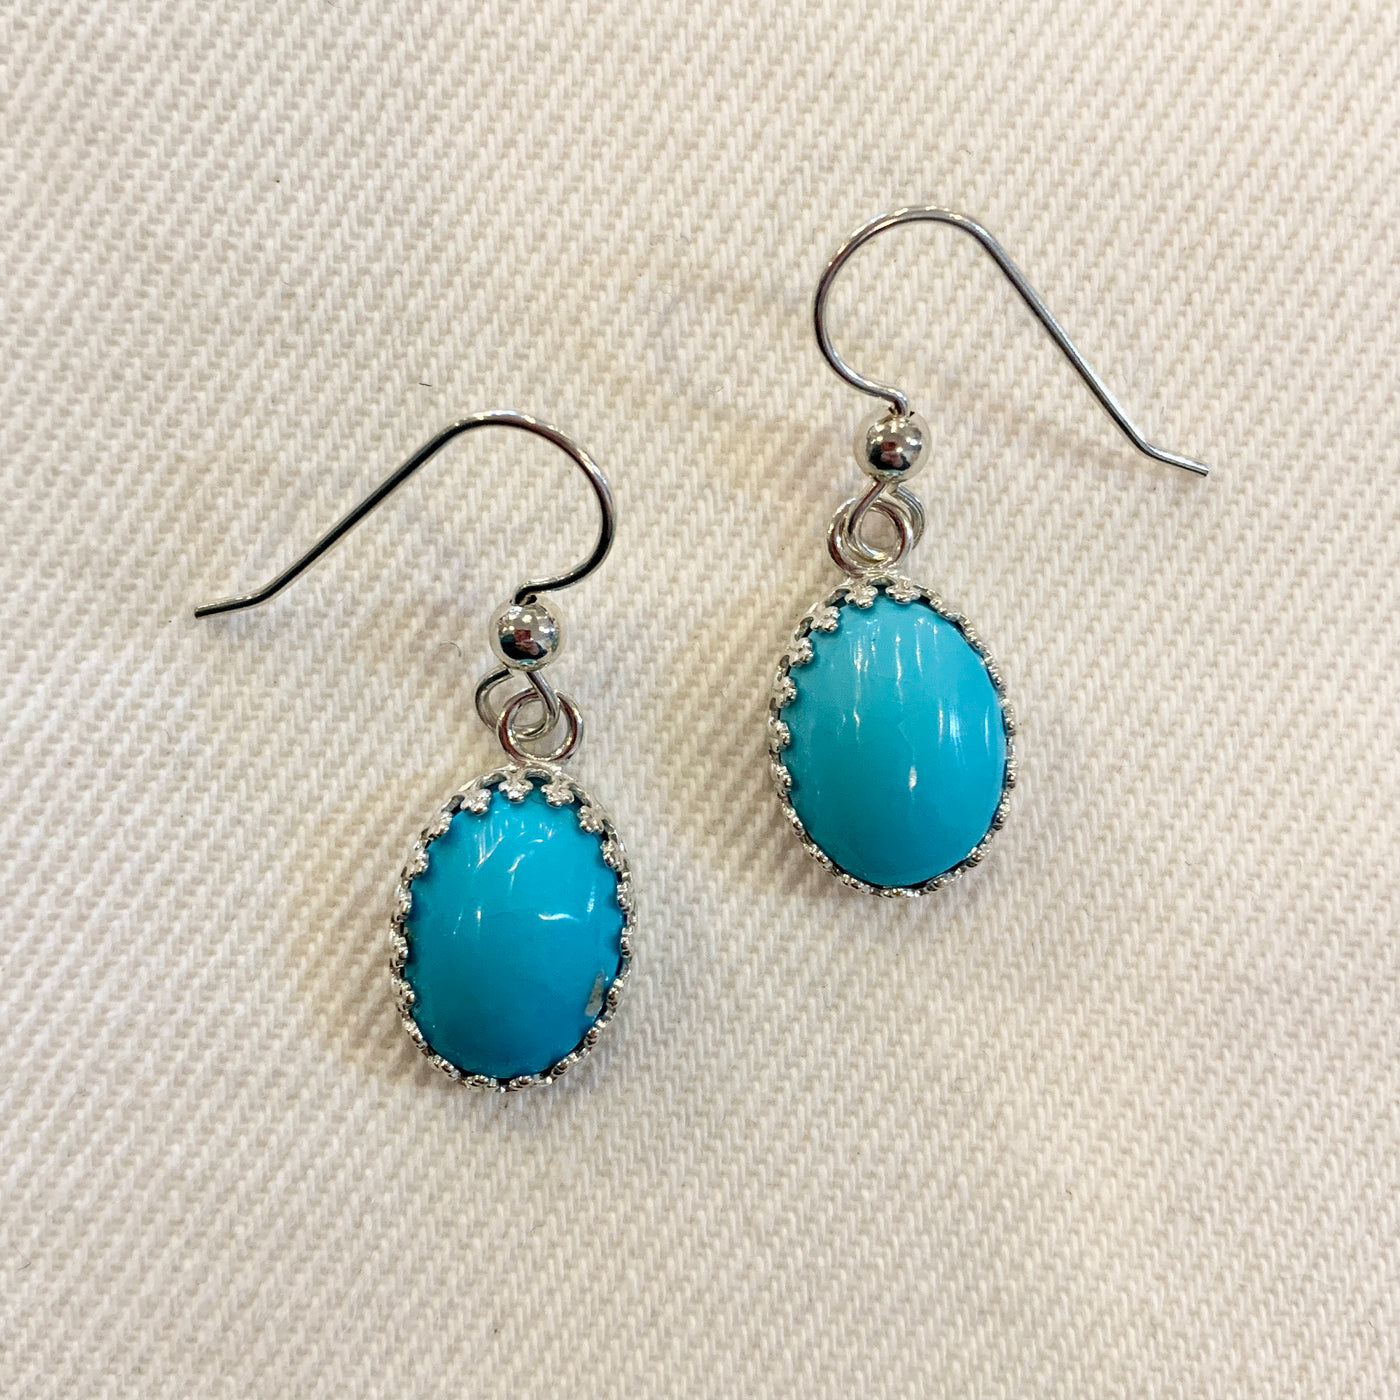 Crystal Creek Gems: Morenci Turquoise Earrings